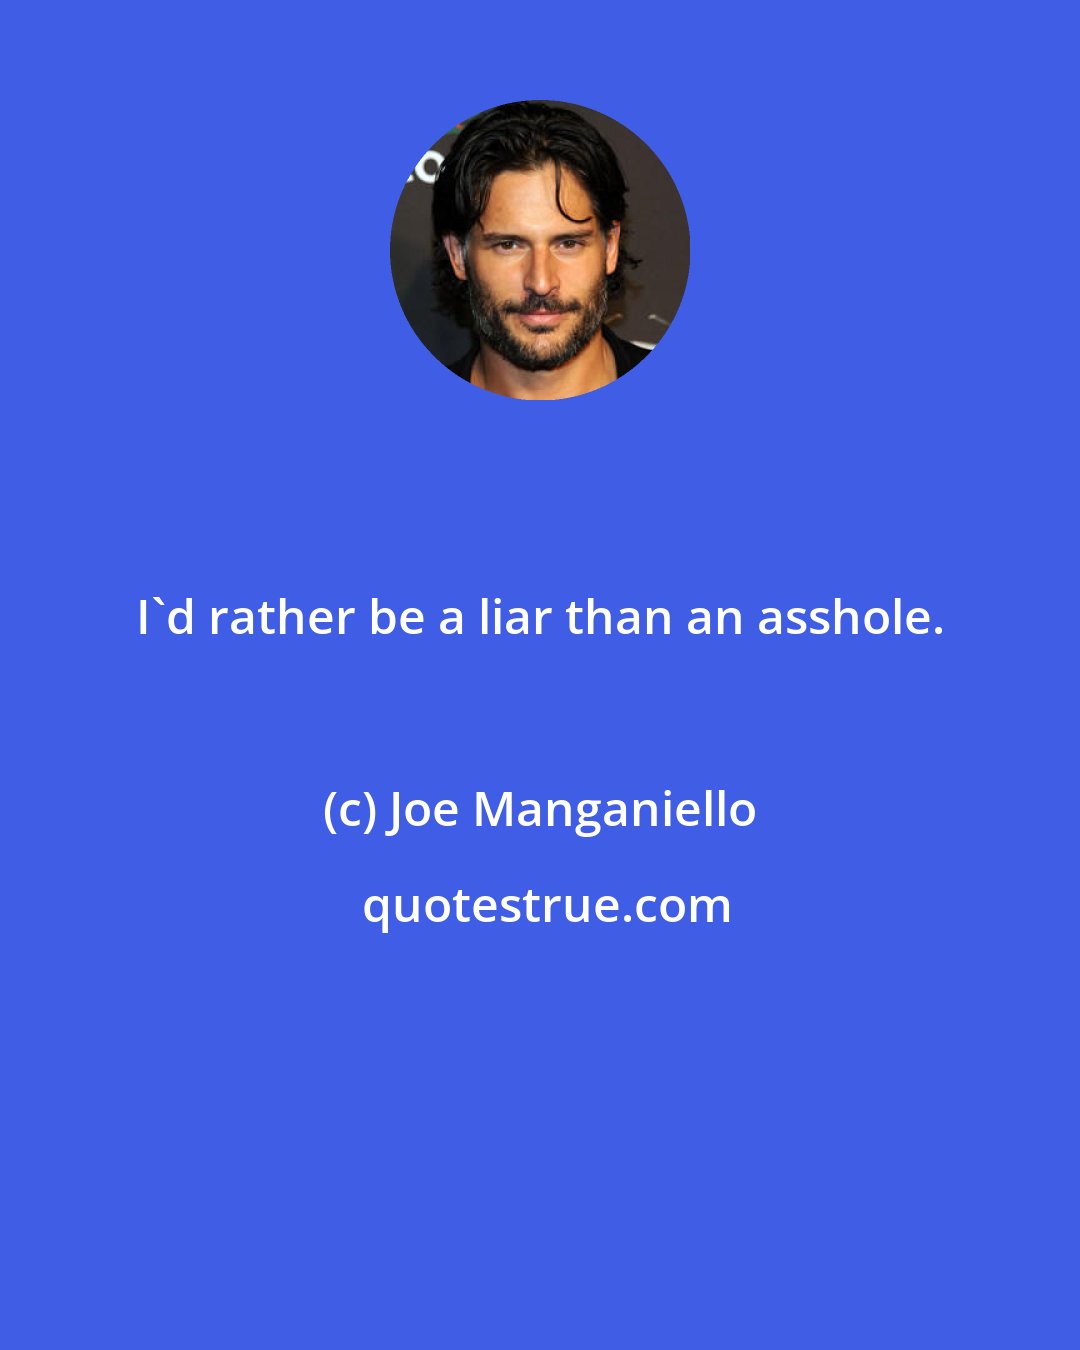 Joe Manganiello: I'd rather be a liar than an asshole.